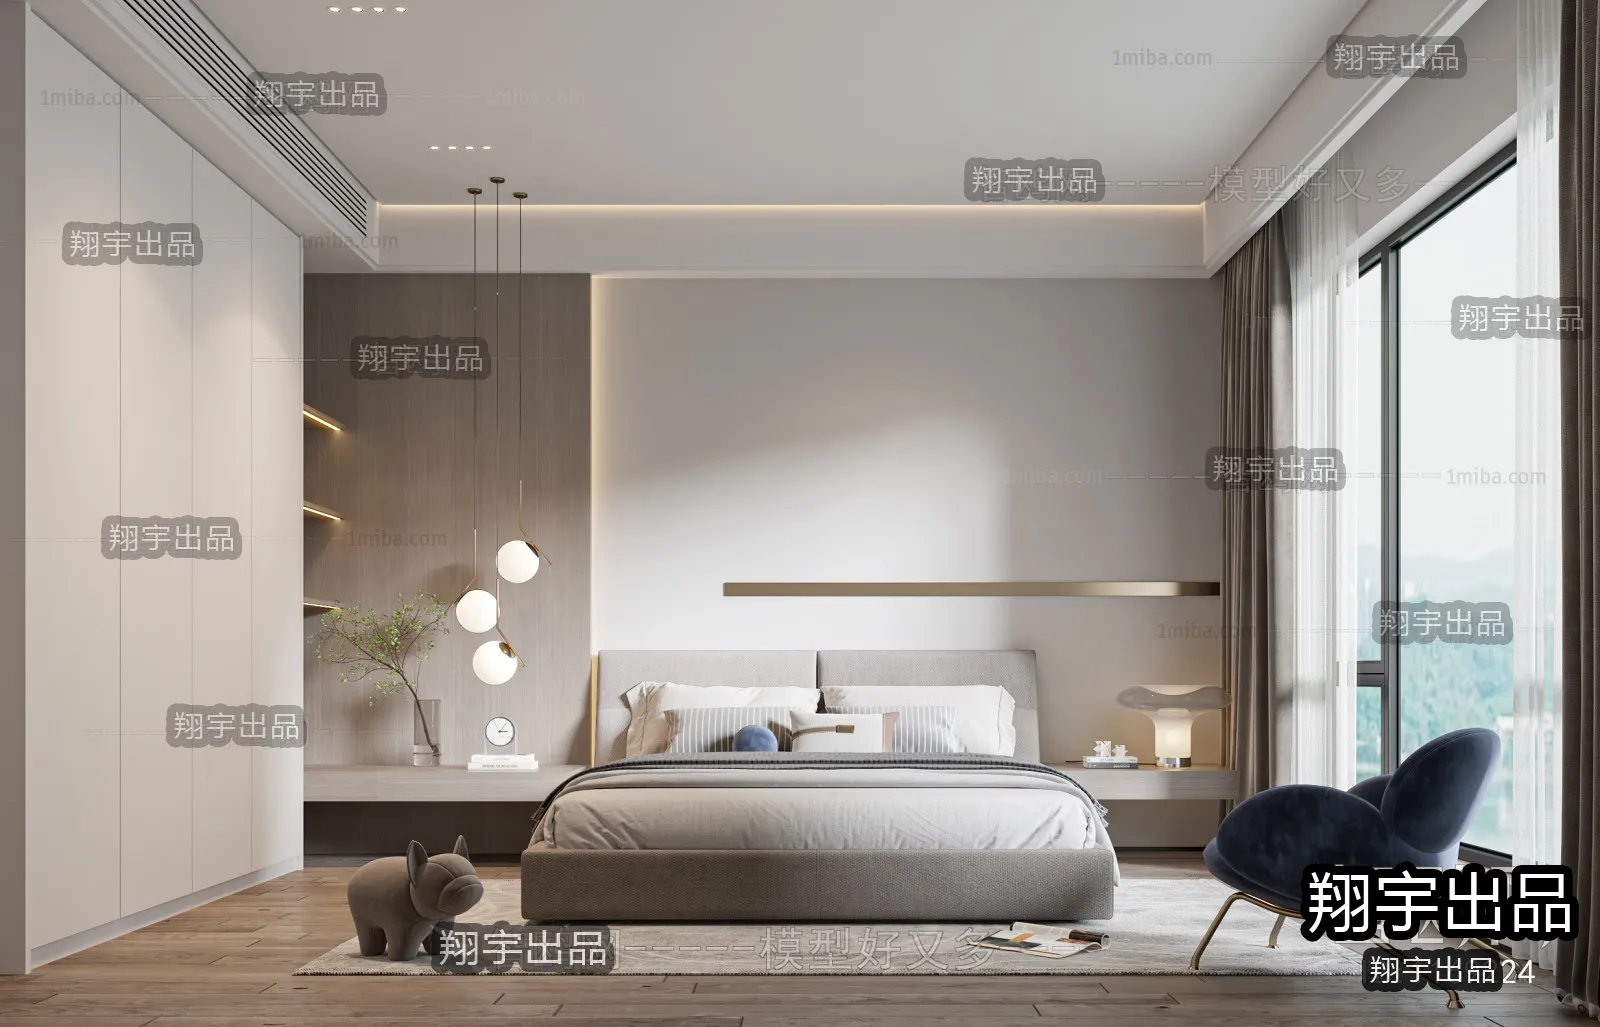 Bedroom – Modern Interior Design – 3D Models – 015